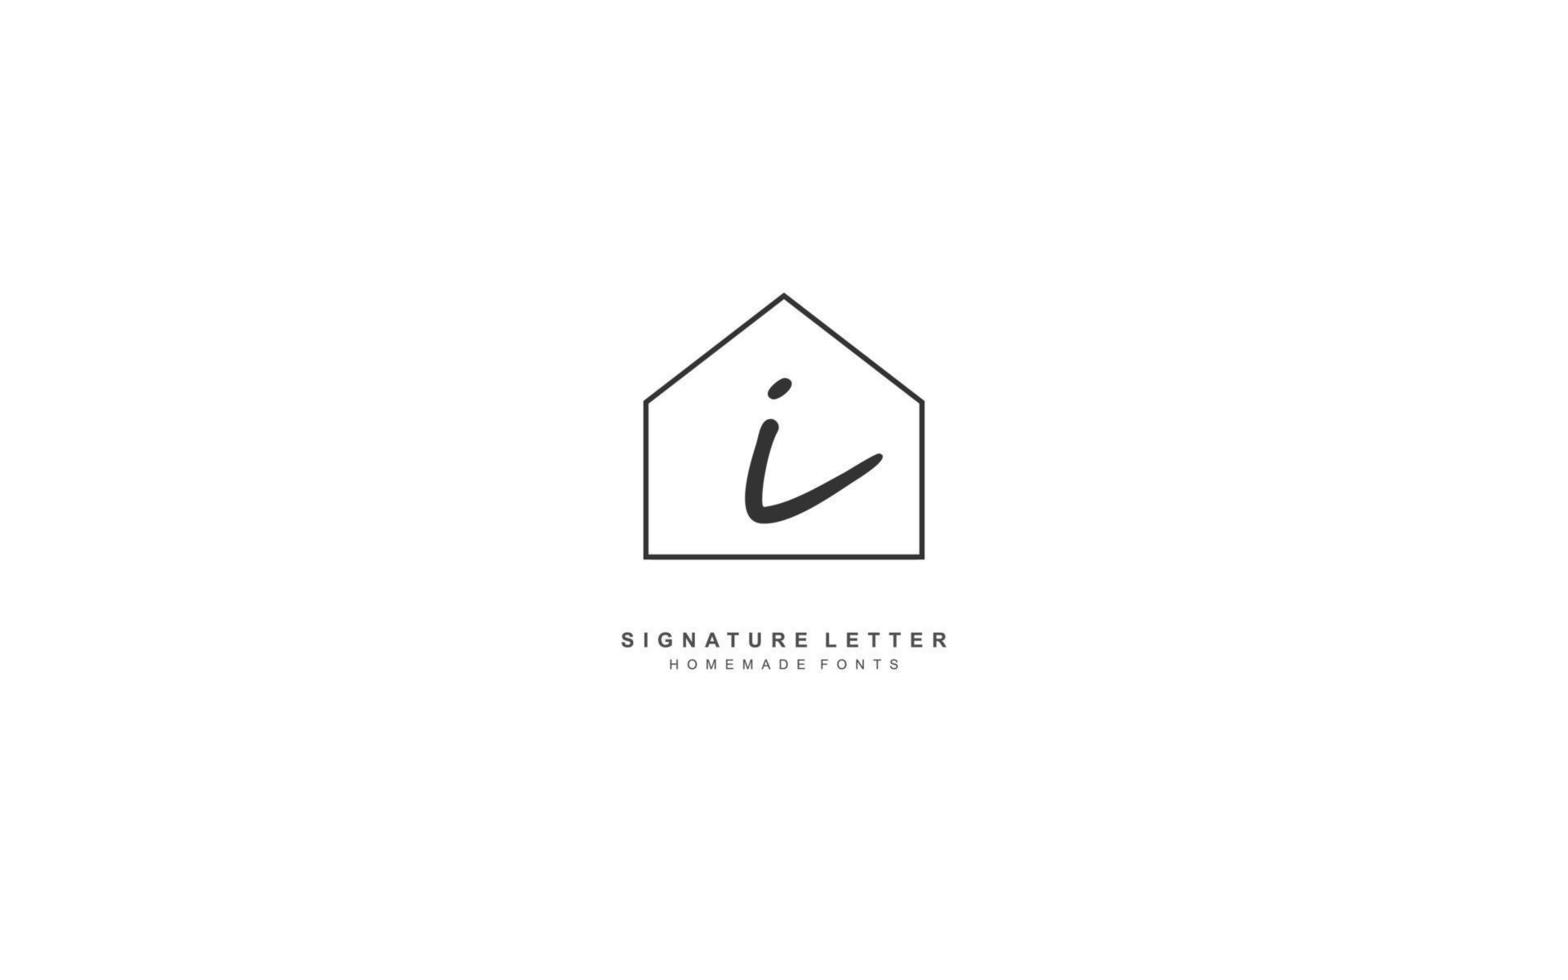 I real estate logo design inspiration. Vector letter template design for brand.